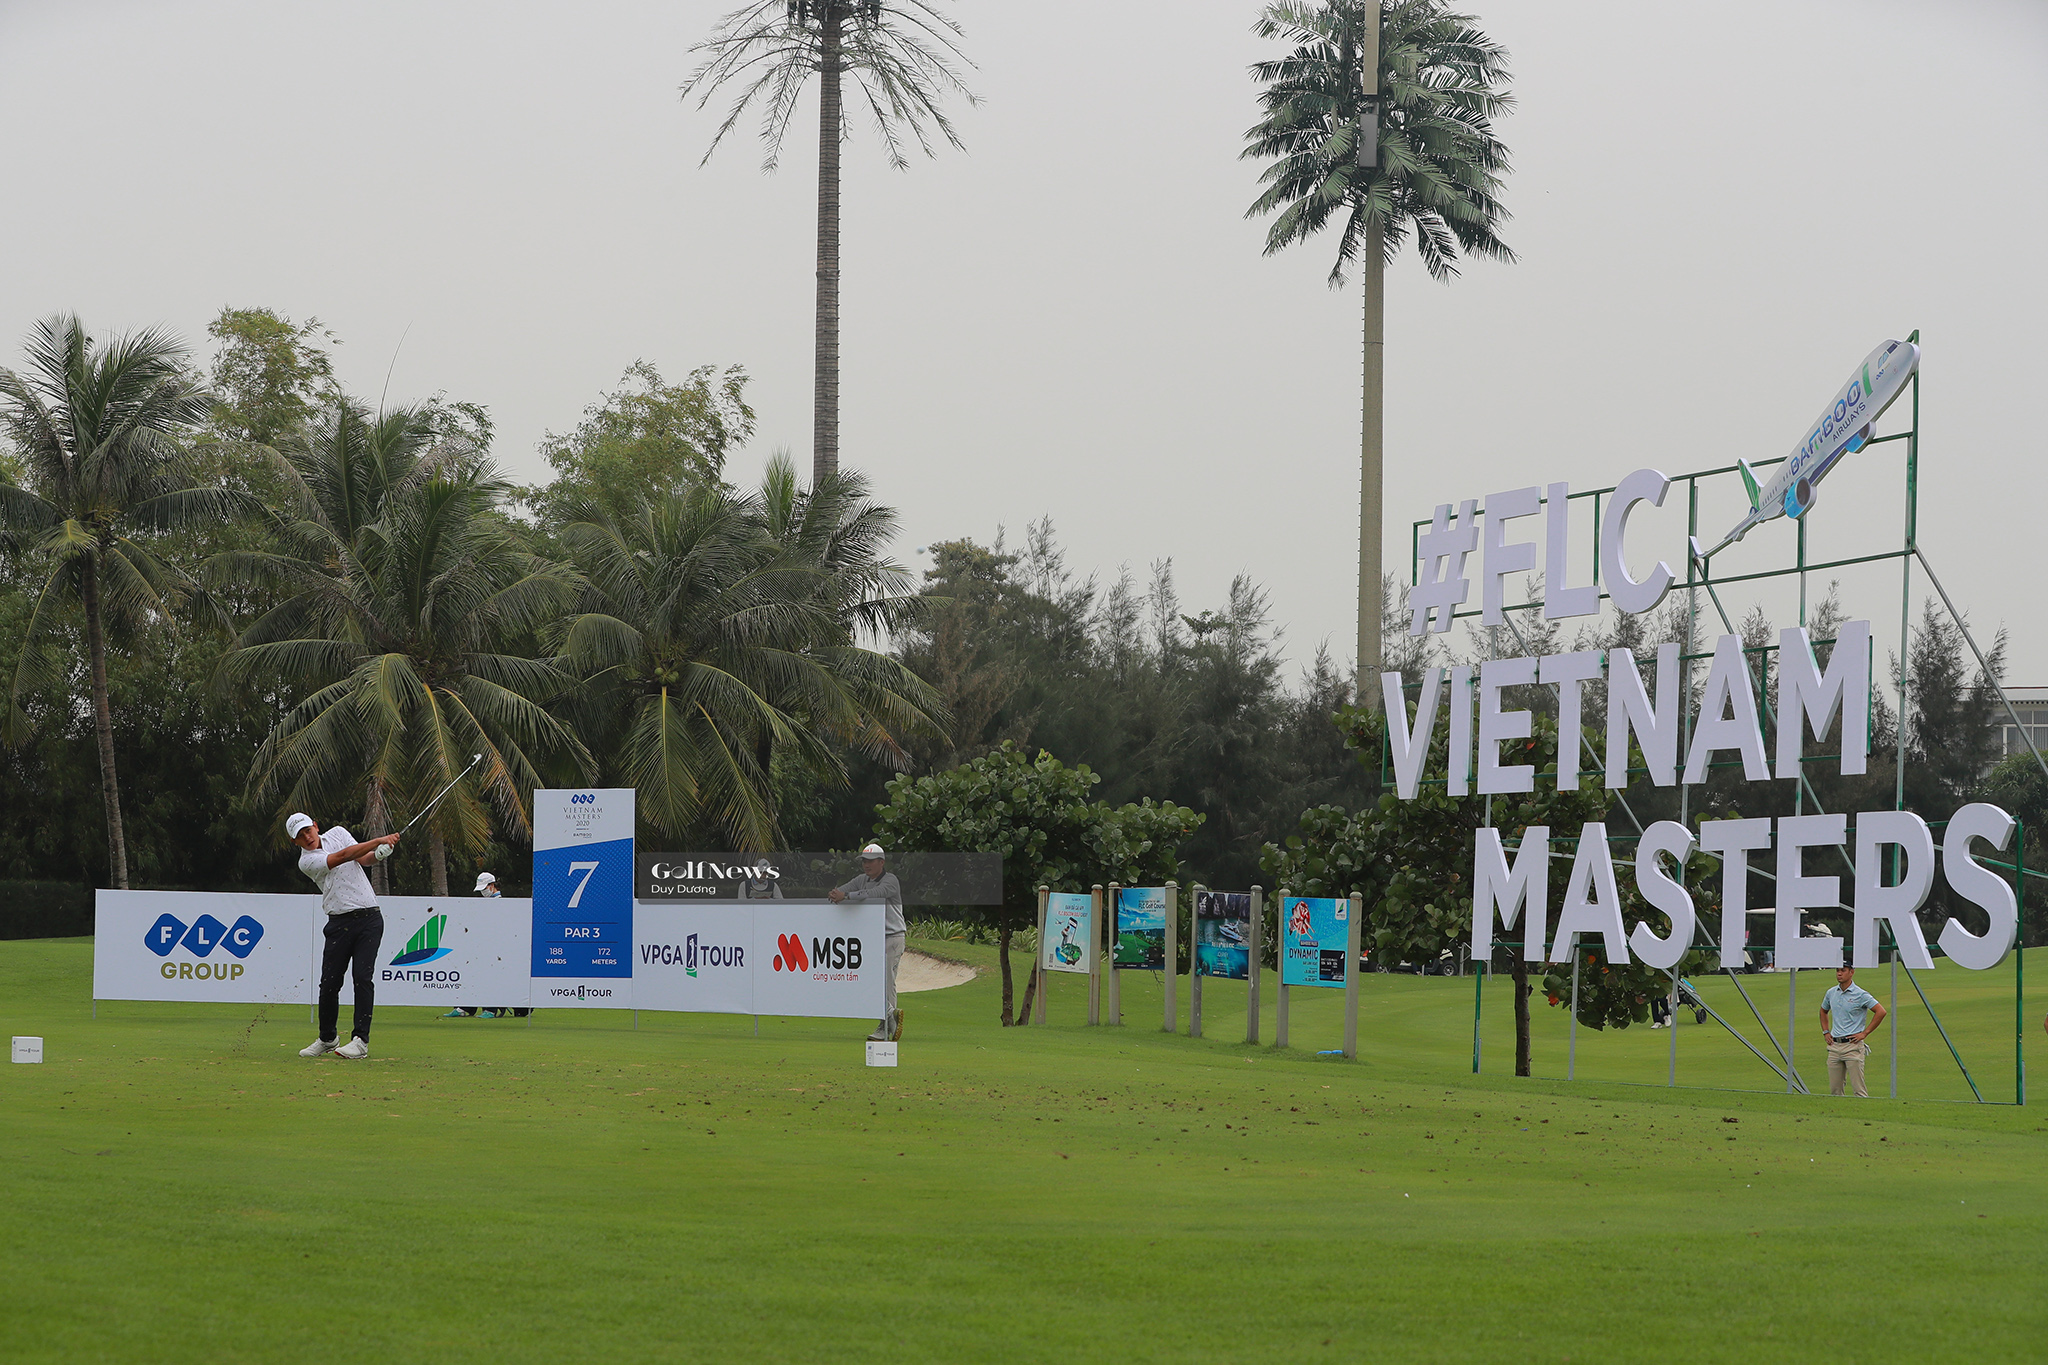 FLC Vietnam Masters 2020: Đỗ Hồng Giang sẽ thi đấu cùng Đoàn Uy tại vòng 3